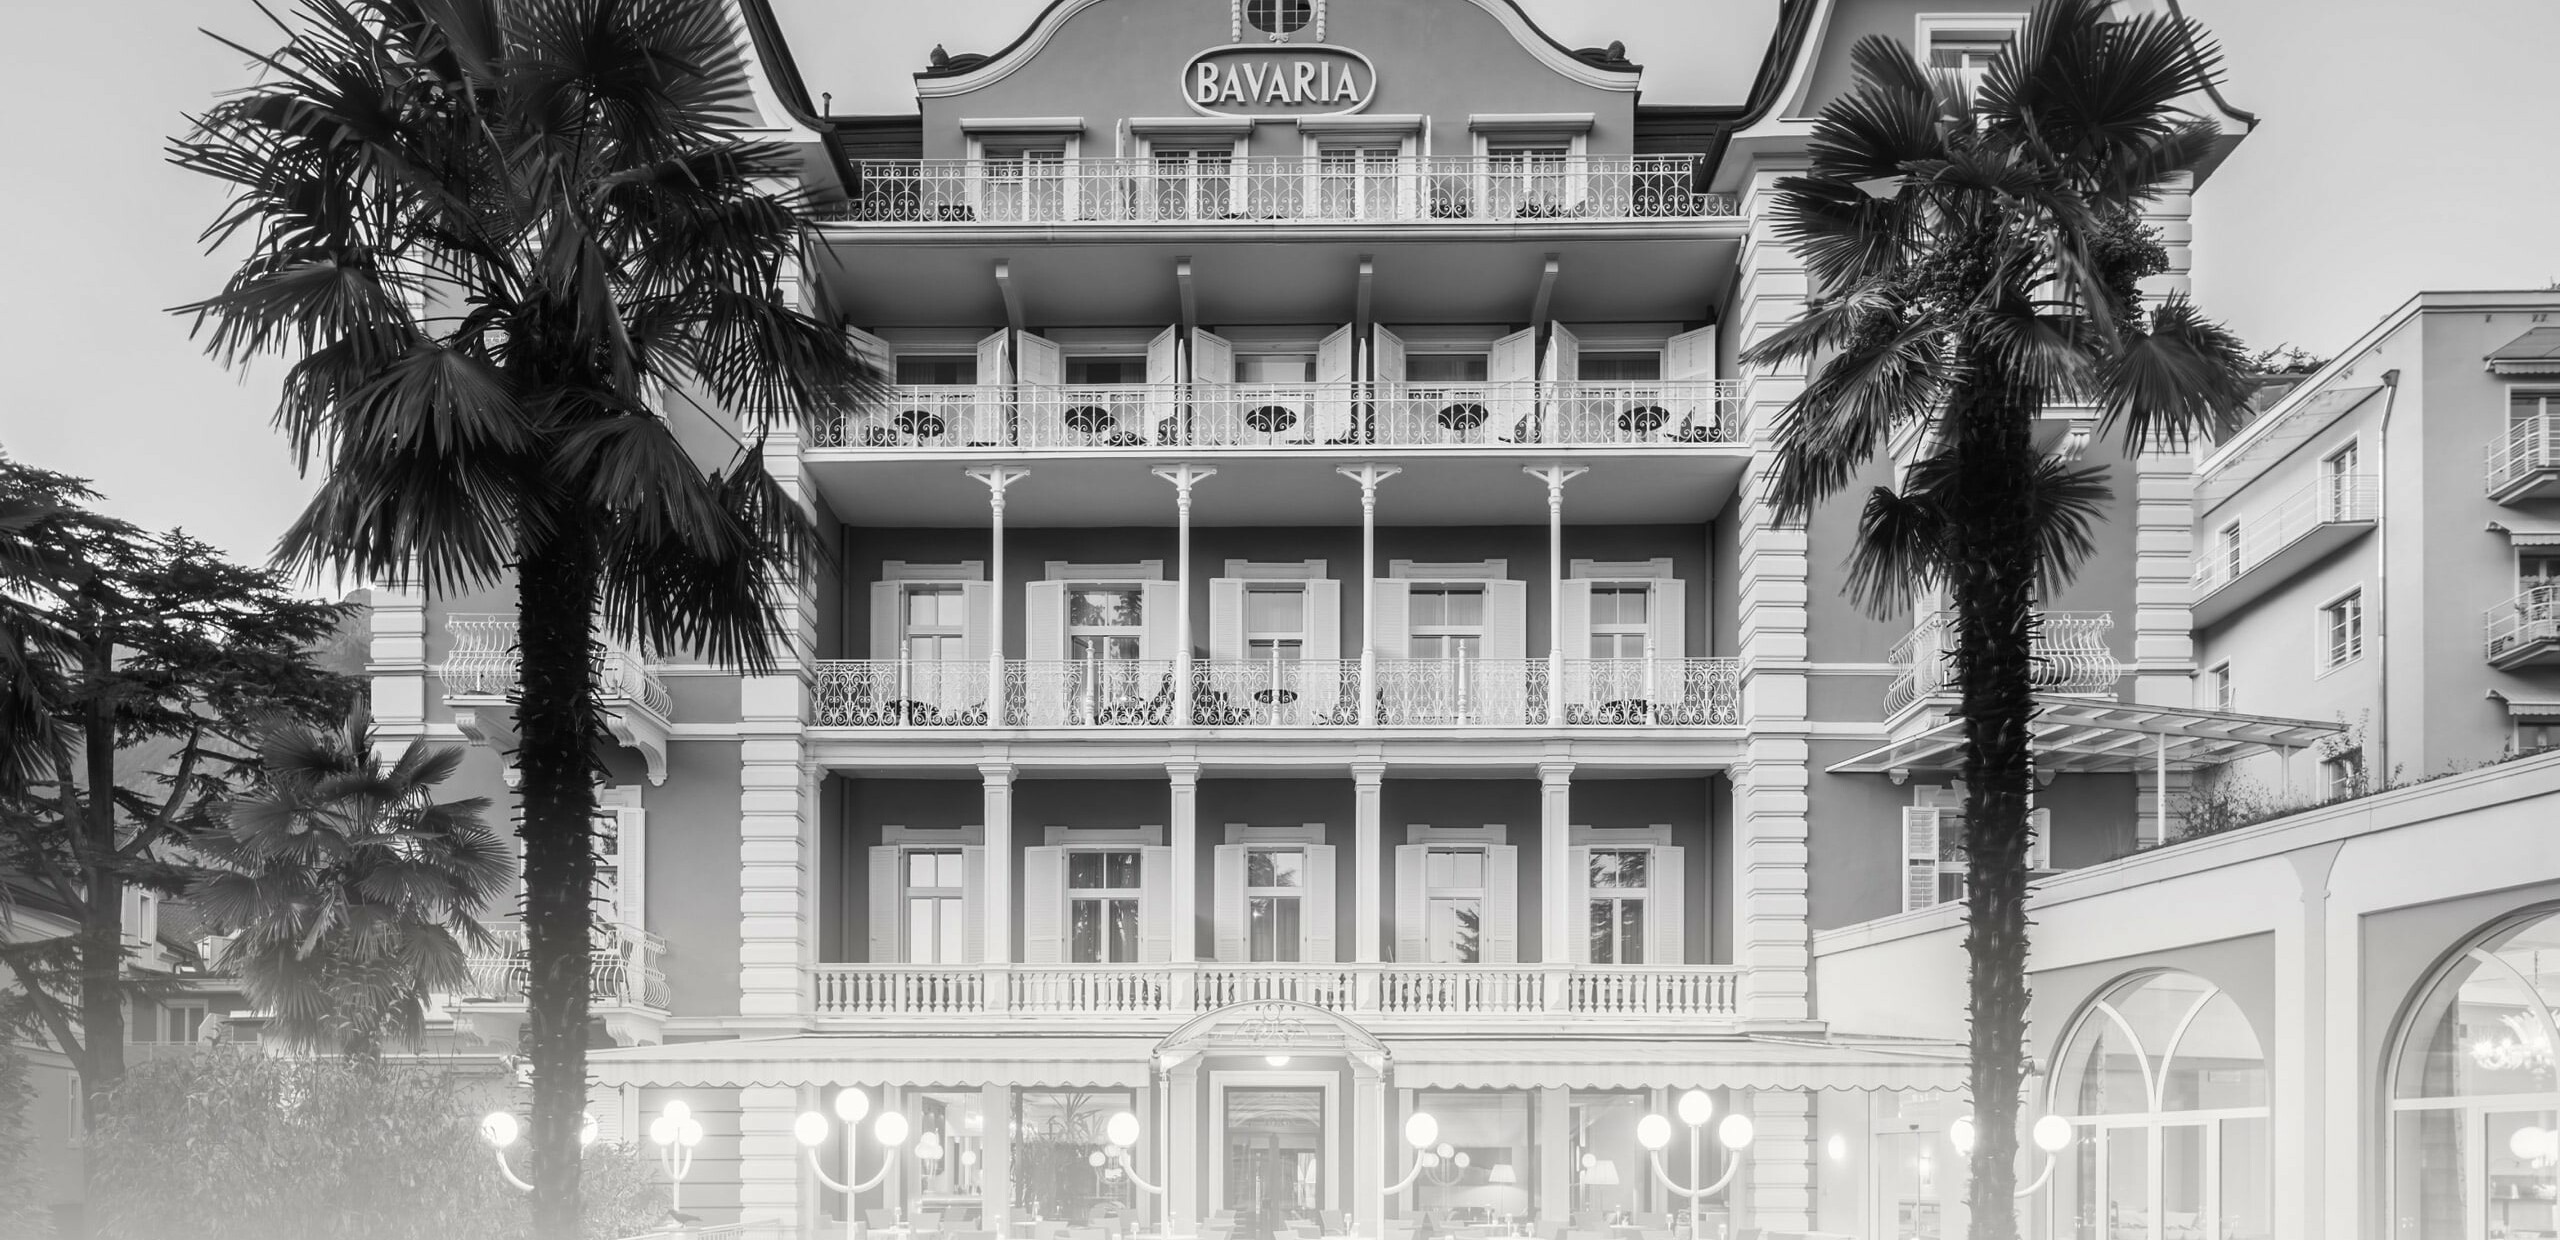 Meranerland Hotels - Villa Bavaria - unsere Geschichte